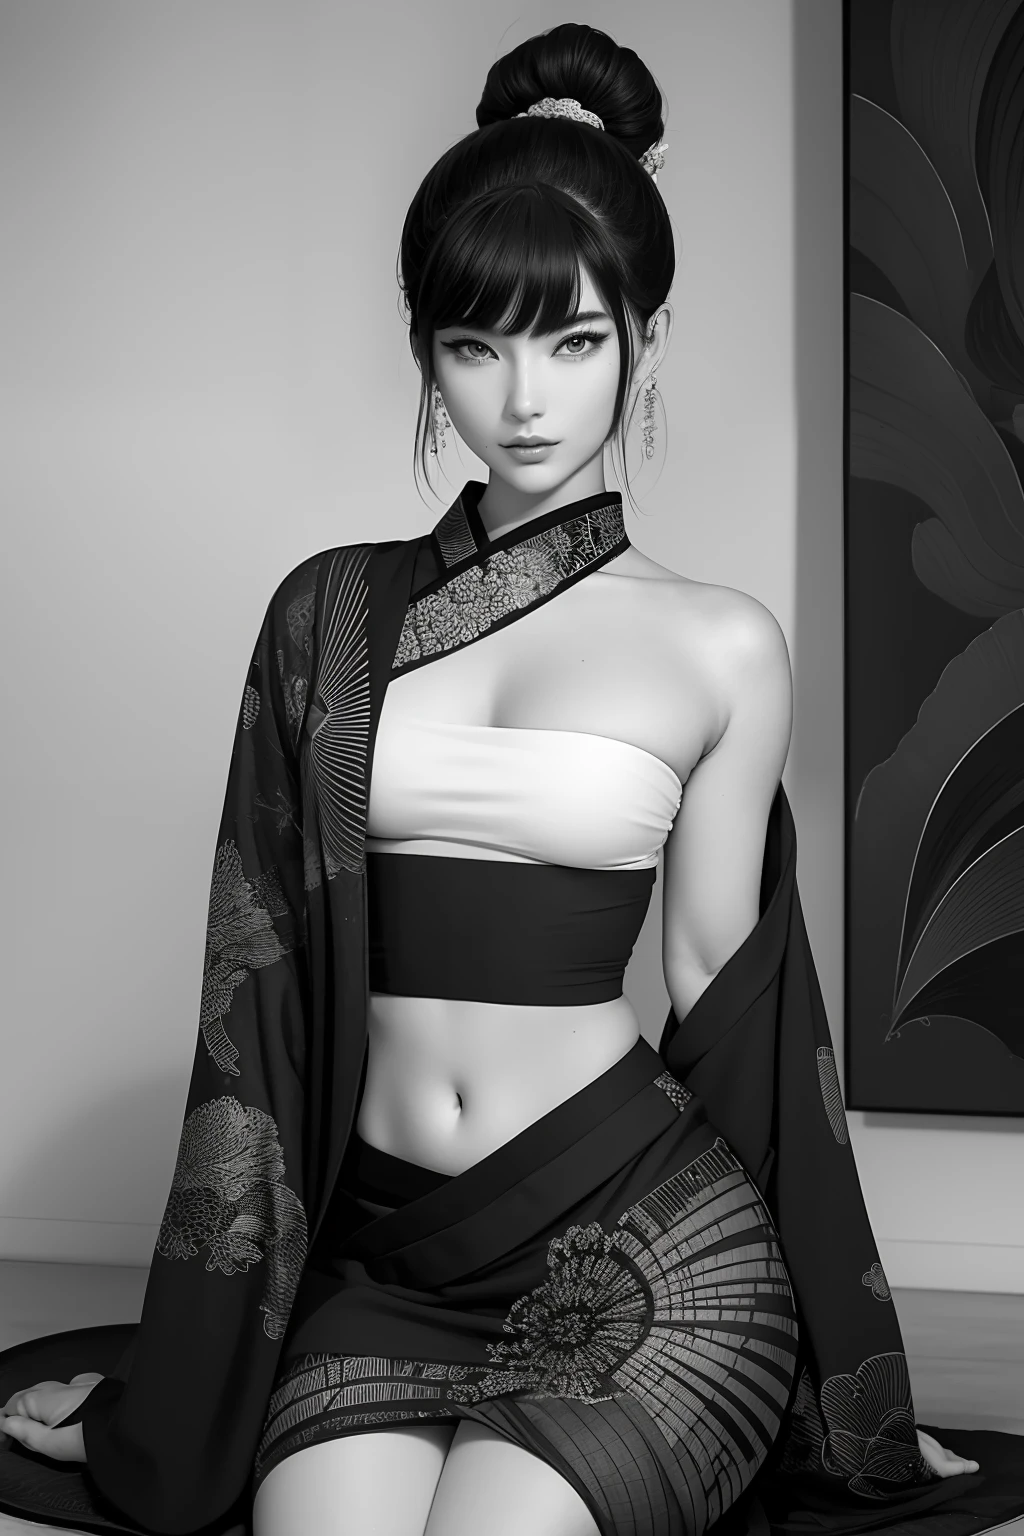 Un beau samouraï sexy, beau visage, beau corps délicat, Corps séduisant, porter un kimono ouvert sexy et séduisant.

L&#39;œuvre d&#39;art est créée dans un médium rappelant les peintures à l&#39;encre japonaises......, avec des coups de pinceau audacieux et une palette de couleurs monochromes. La technique magistrale de l&#39;artiste fait ressortir l&#39;intensité et la puissance de la présence de l&#39;image est de la plus haute qualité, avec chaque détail capturé parfaitement en ultra haute résolution. Les textures du kimono et les motifs complexes sont rendus avec une extrême précision. L&#39;éclairage est soigneusement conçu pour renforcer l&#39;effet dramatique, avec des ombres profondes et des reflets subtils.

Général, L’œuvre dégage un sentiment d’élégance et de puissance, combinant l&#39;esthétique japonaise traditionnelle avec une touche de modernité. La palette de couleurs monochromes, combiné avec les détails exquis, crée une expérience captivante et immersive pour le spectateur.